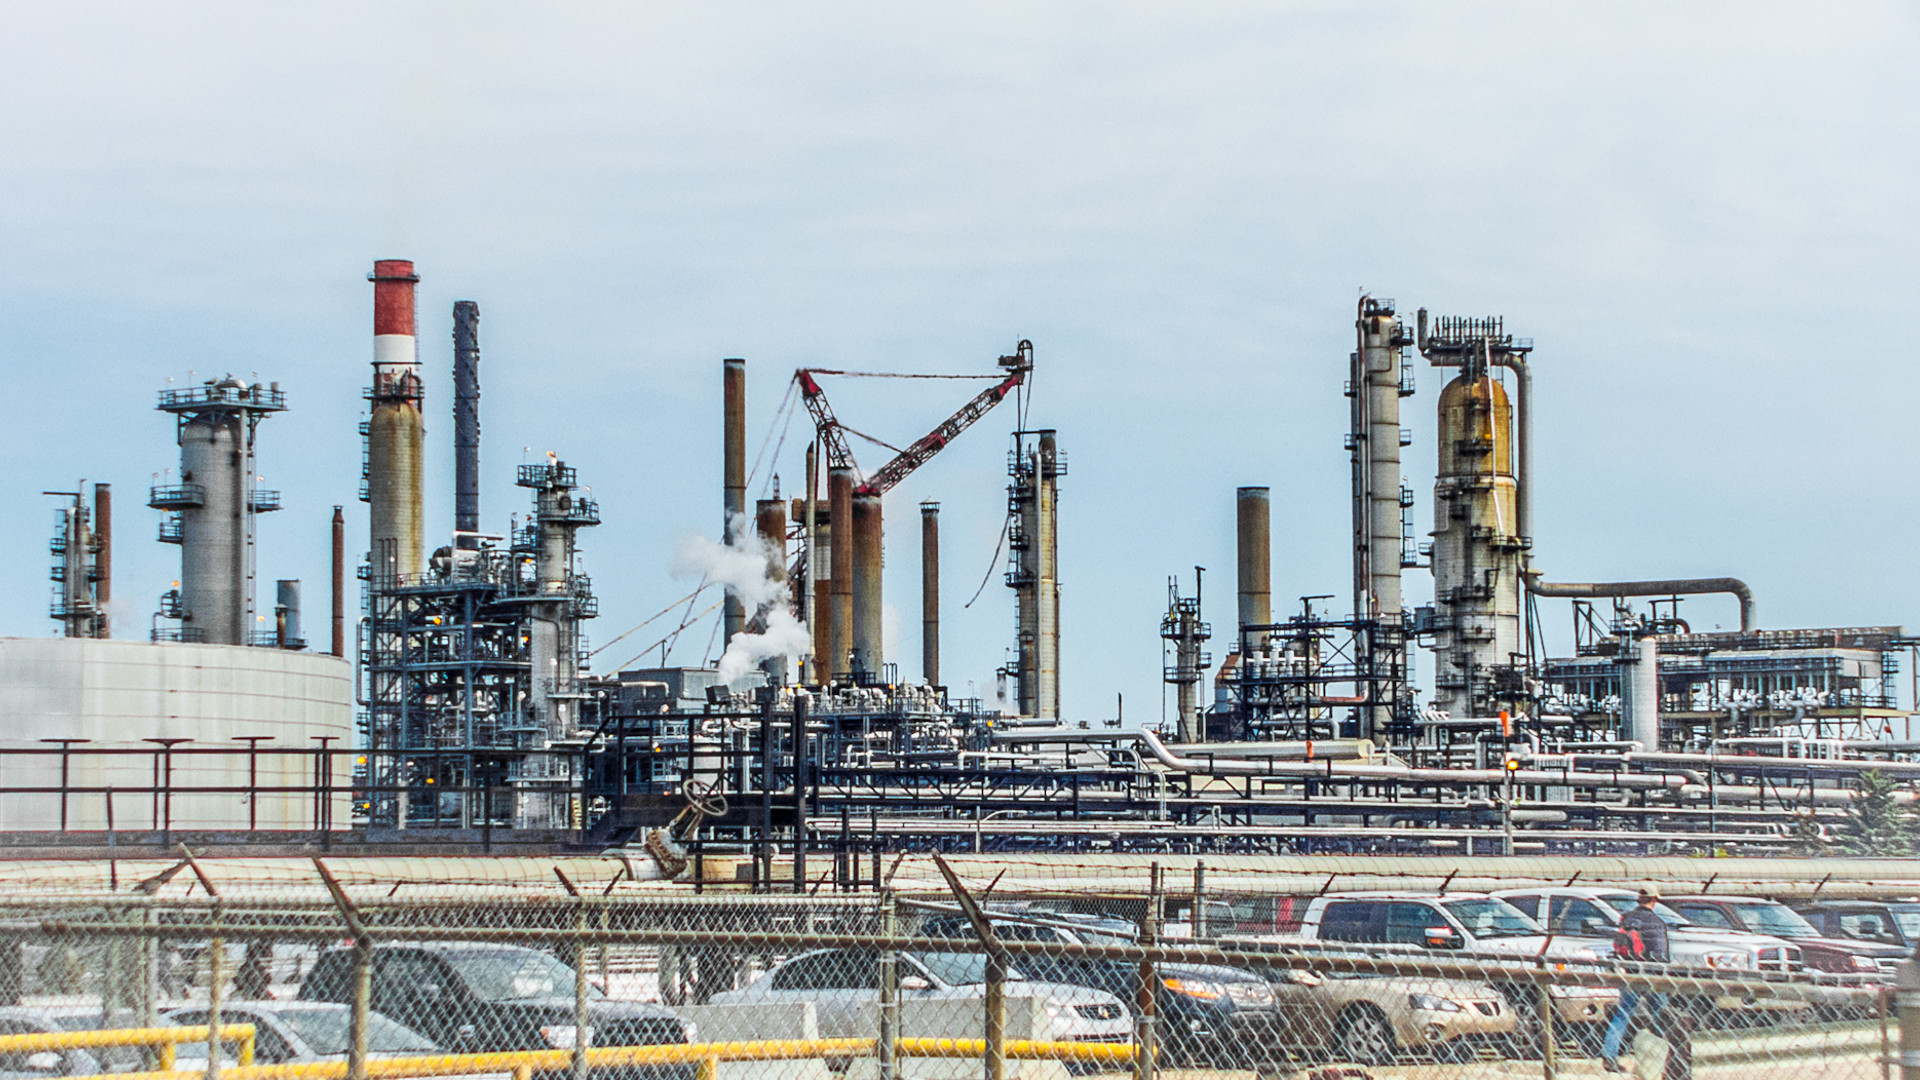 Alberta oil refinery